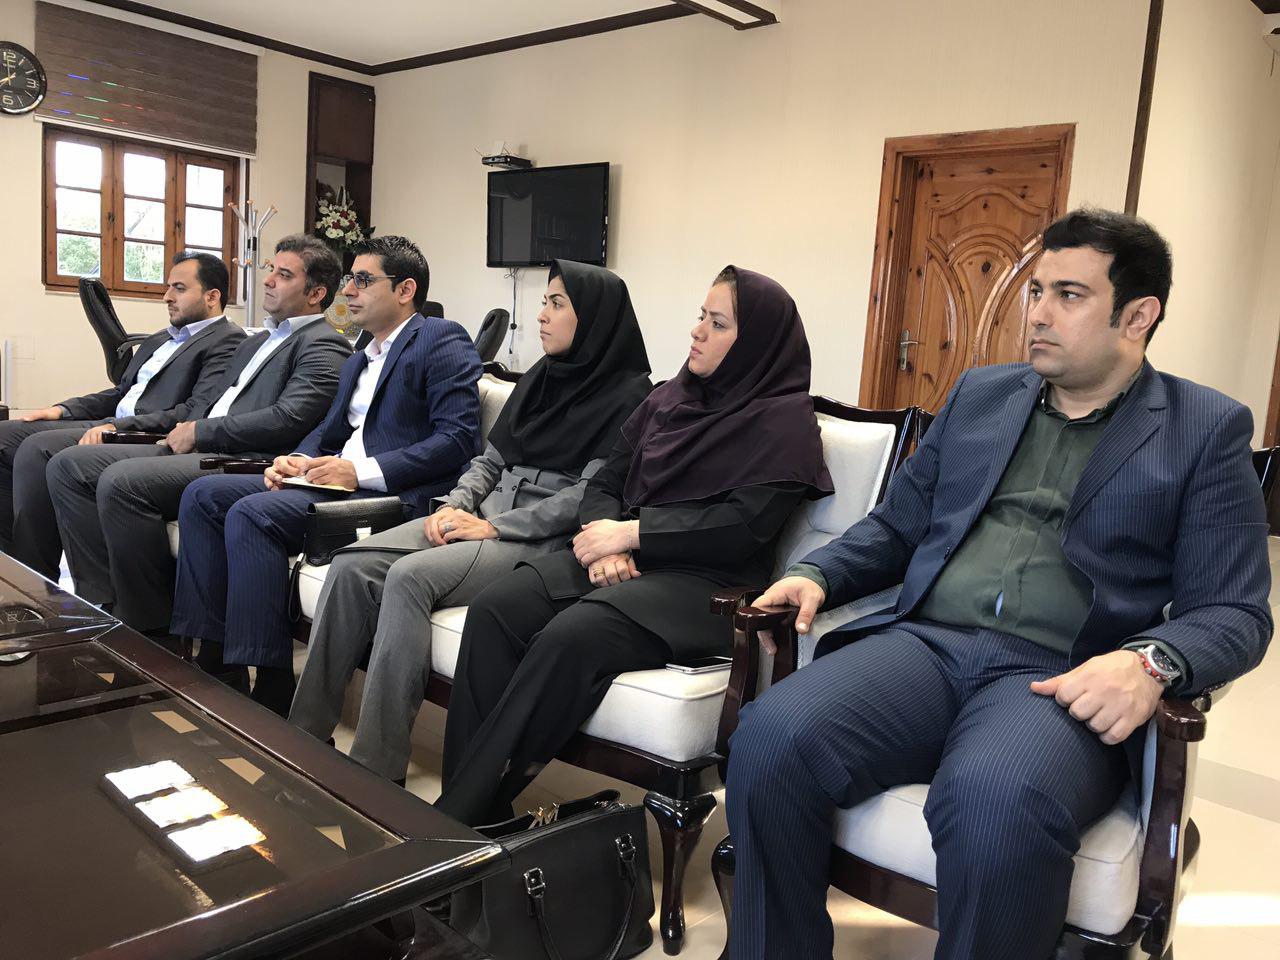 اعضا شورا، فردی توانمند با سلامت مالی را برای شهرداری بوشهر انتخاب کنند